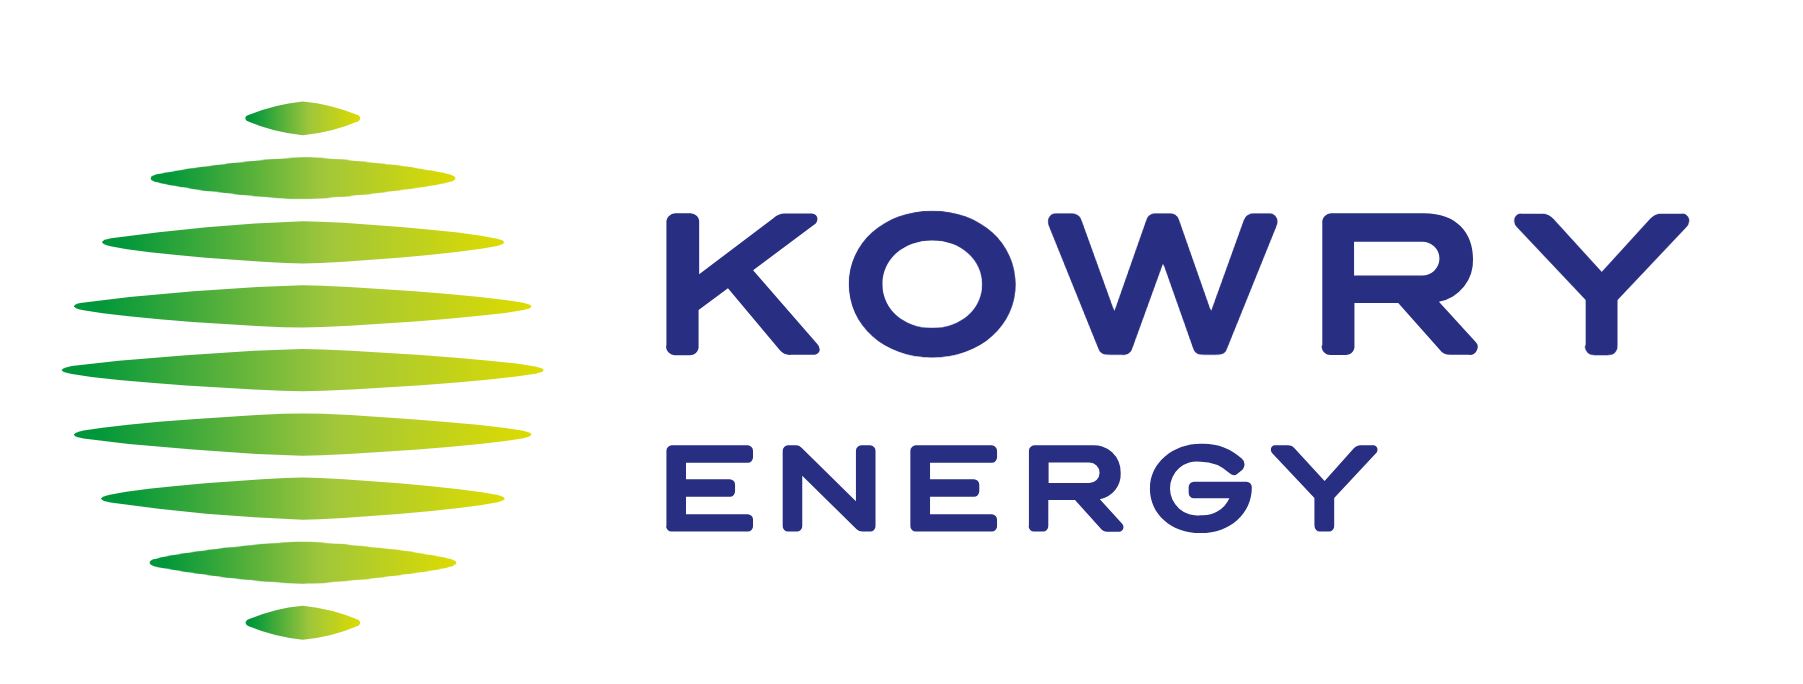 Kowry Energy annonce la mise en service de systèmes d’énergie solaire décentralisés au Sénégal, Nigéria et Mali